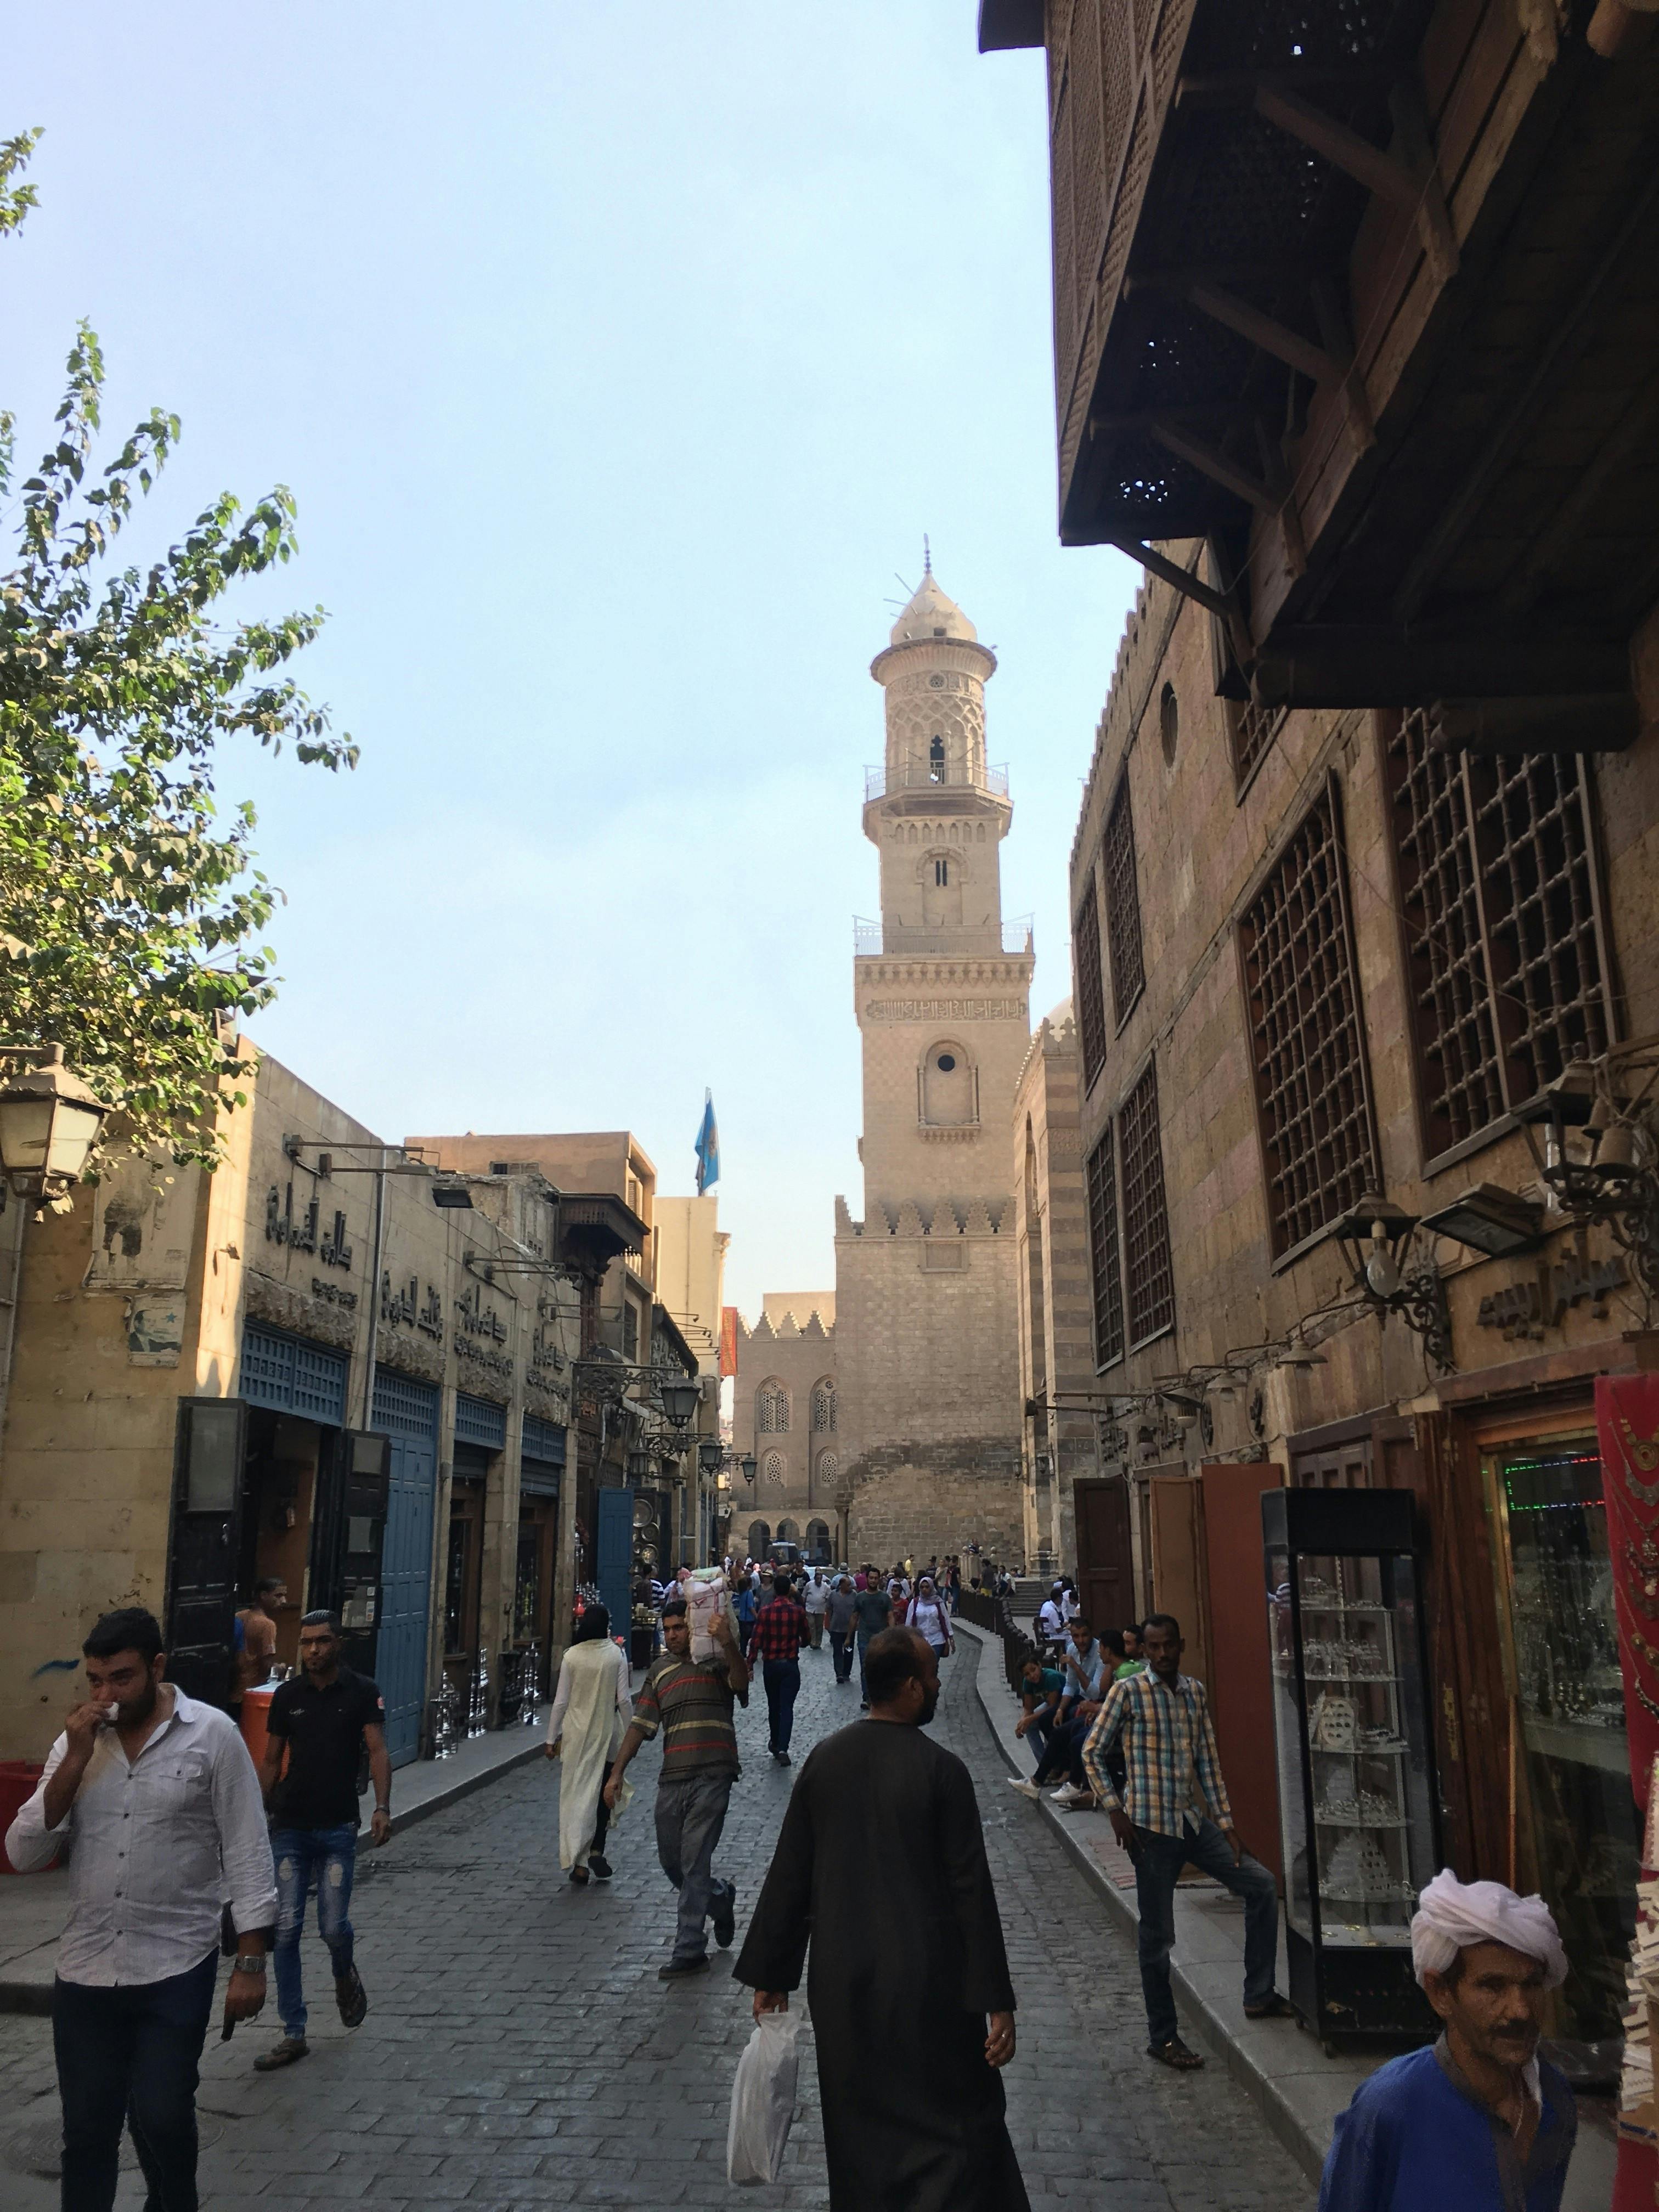 Recorrido histórico por El Cairo con la calle Al-Muizz, la mezquita Al-Azhar y el bazar Khan El Khalil